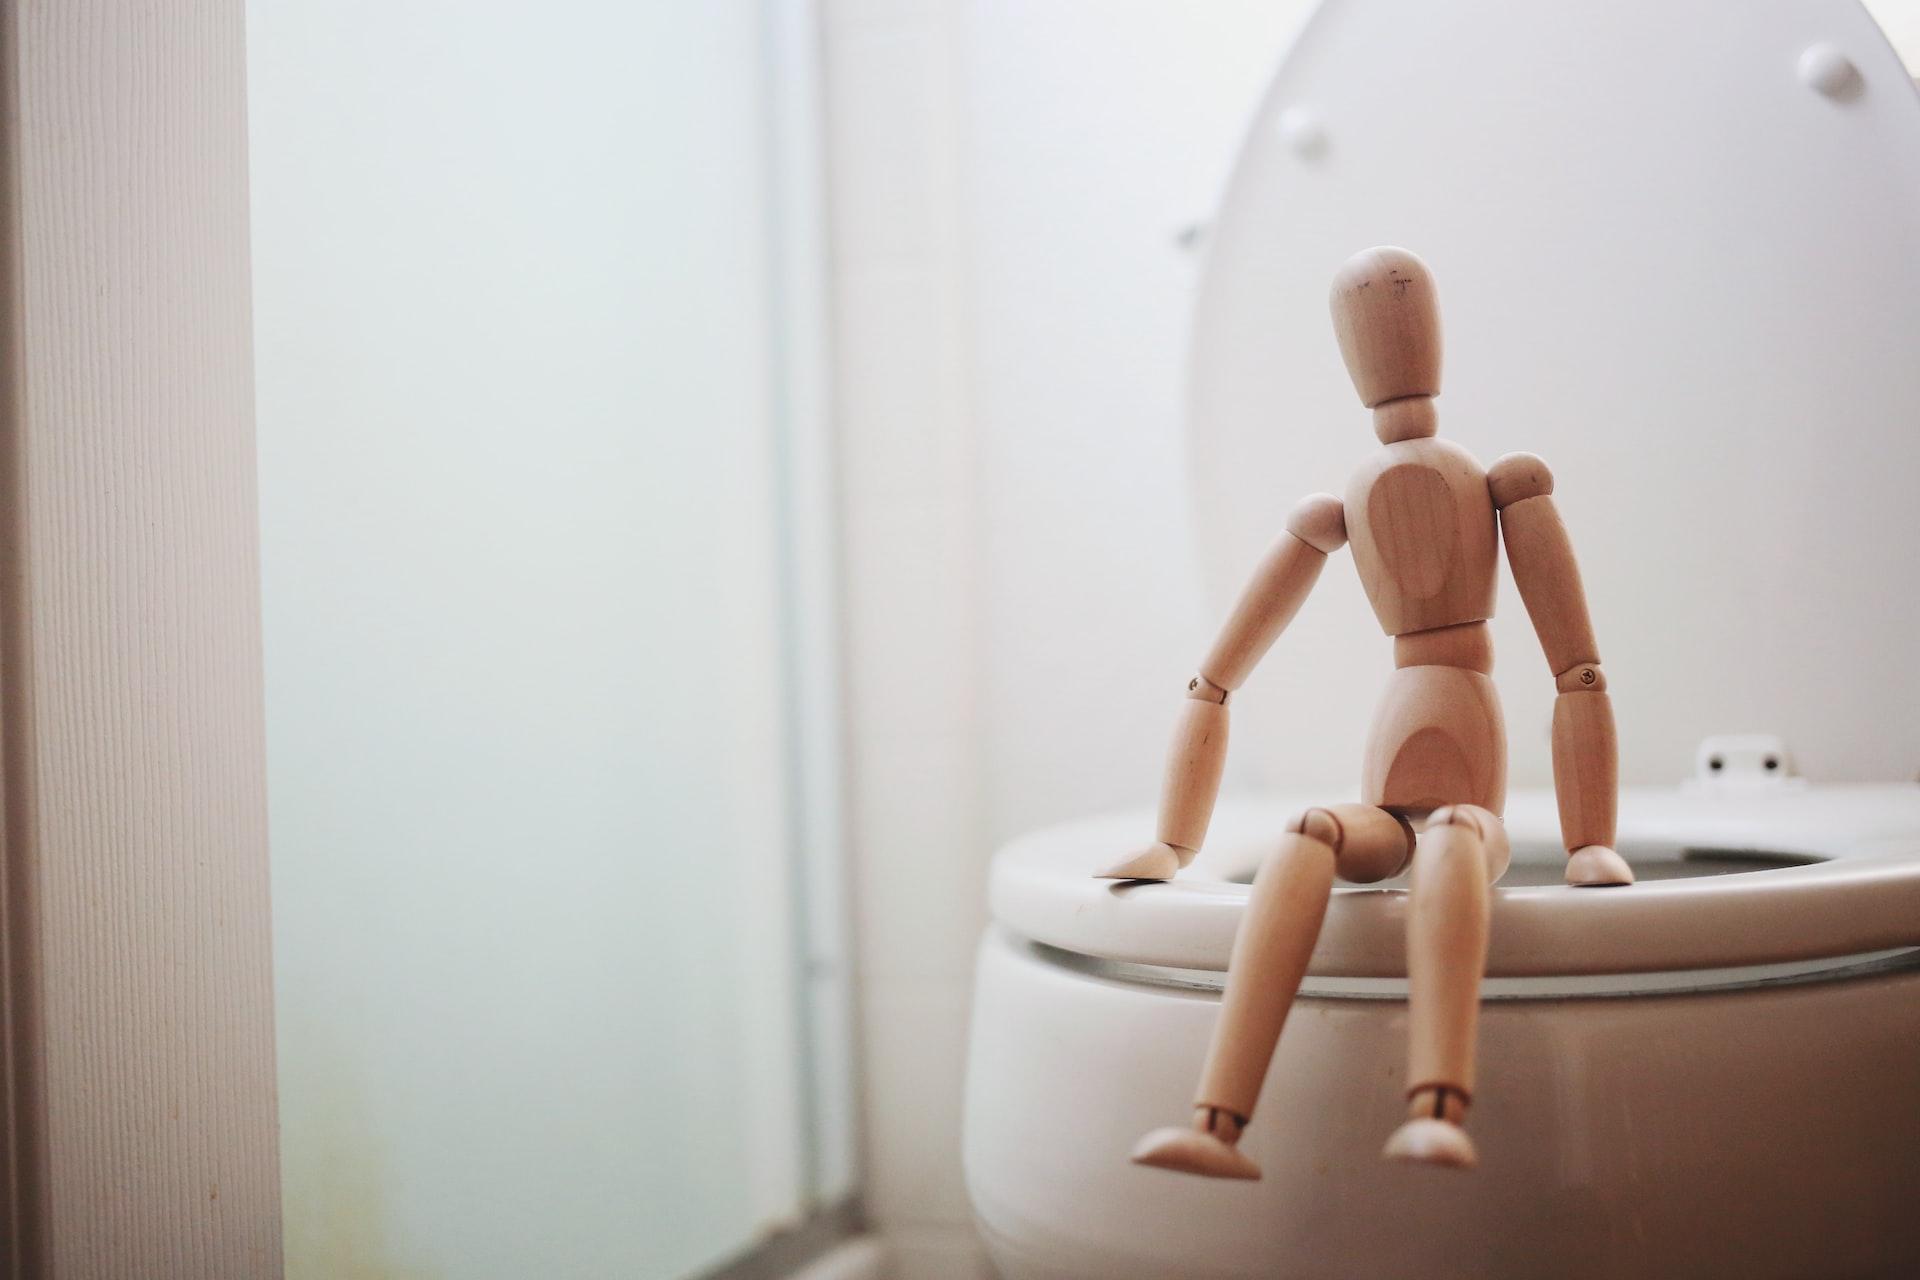 Diarreia pode provocar desidratação por conta de idas frequentes ao banheiro. (Fonte: Giorgio Trovato/Unsplash/Reprodução)